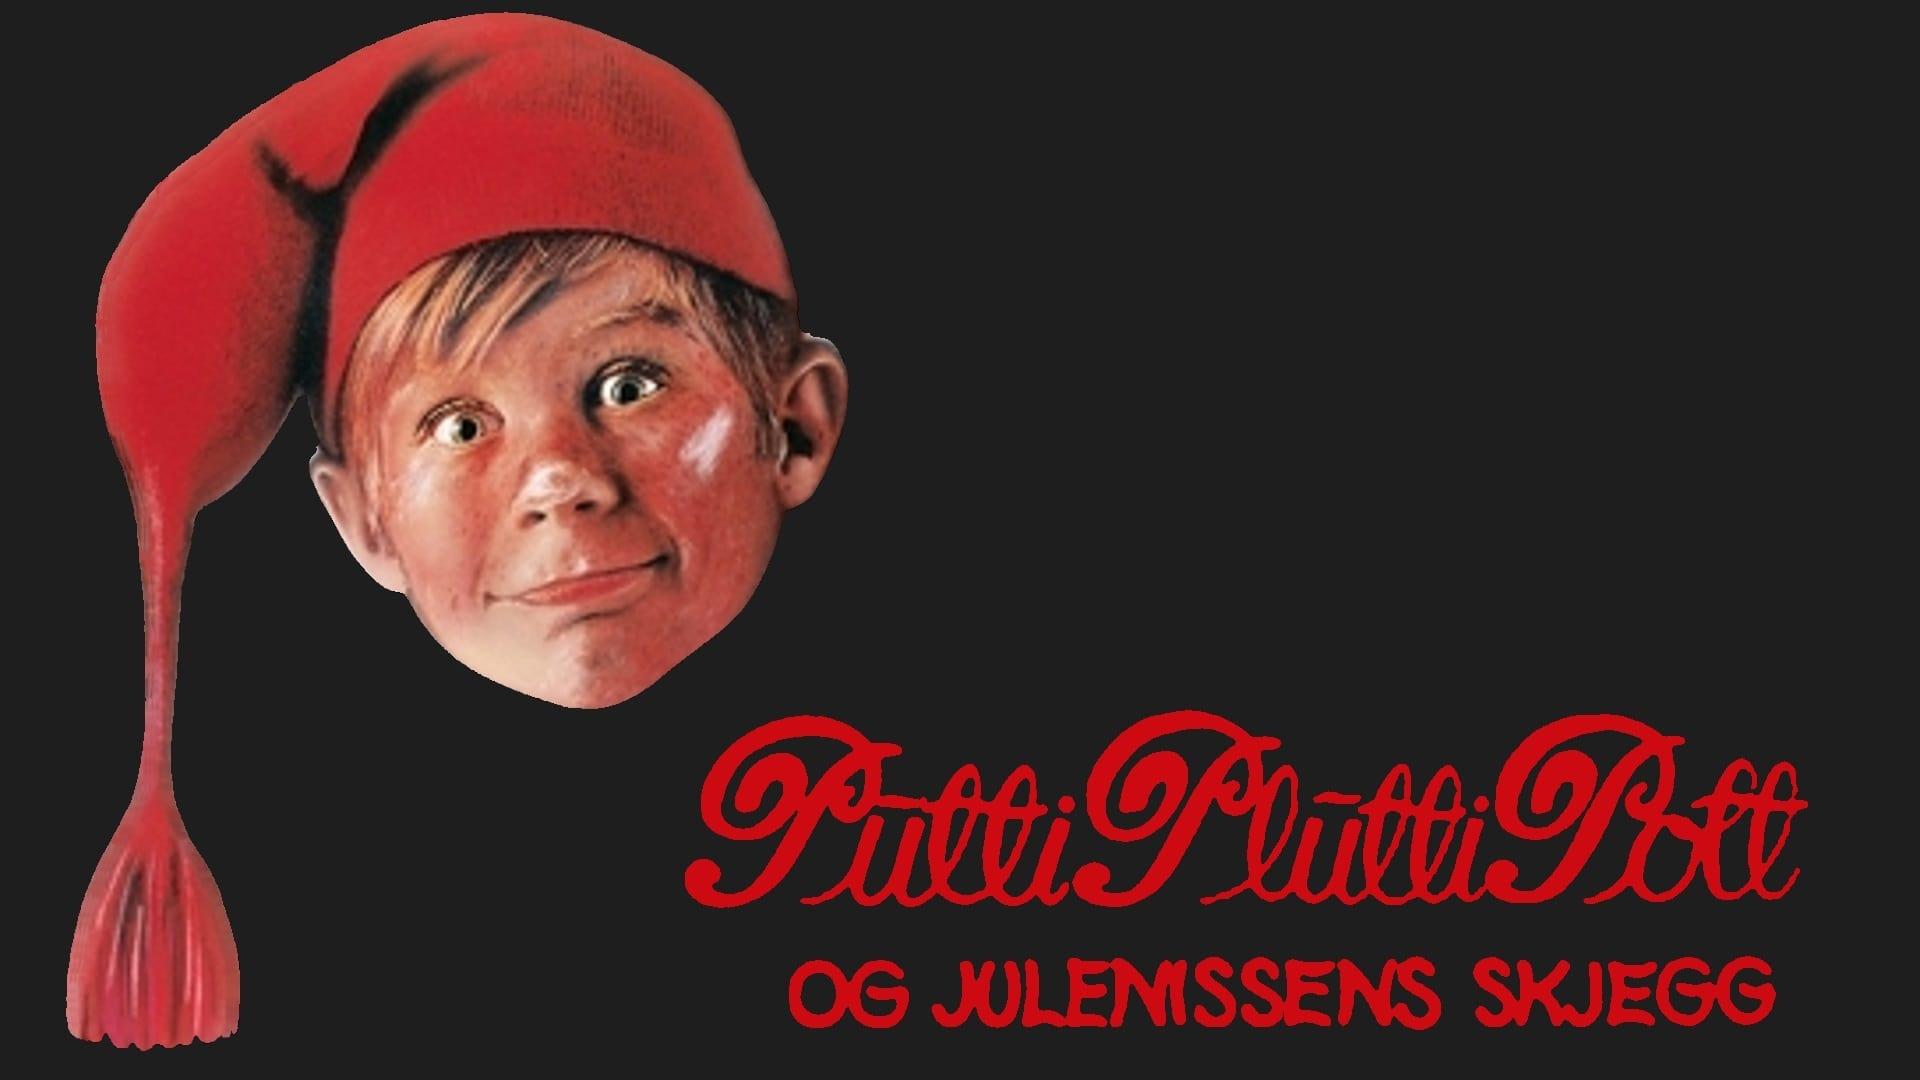 Putti Plutti Pott og Julenissens Skjegg backdrop